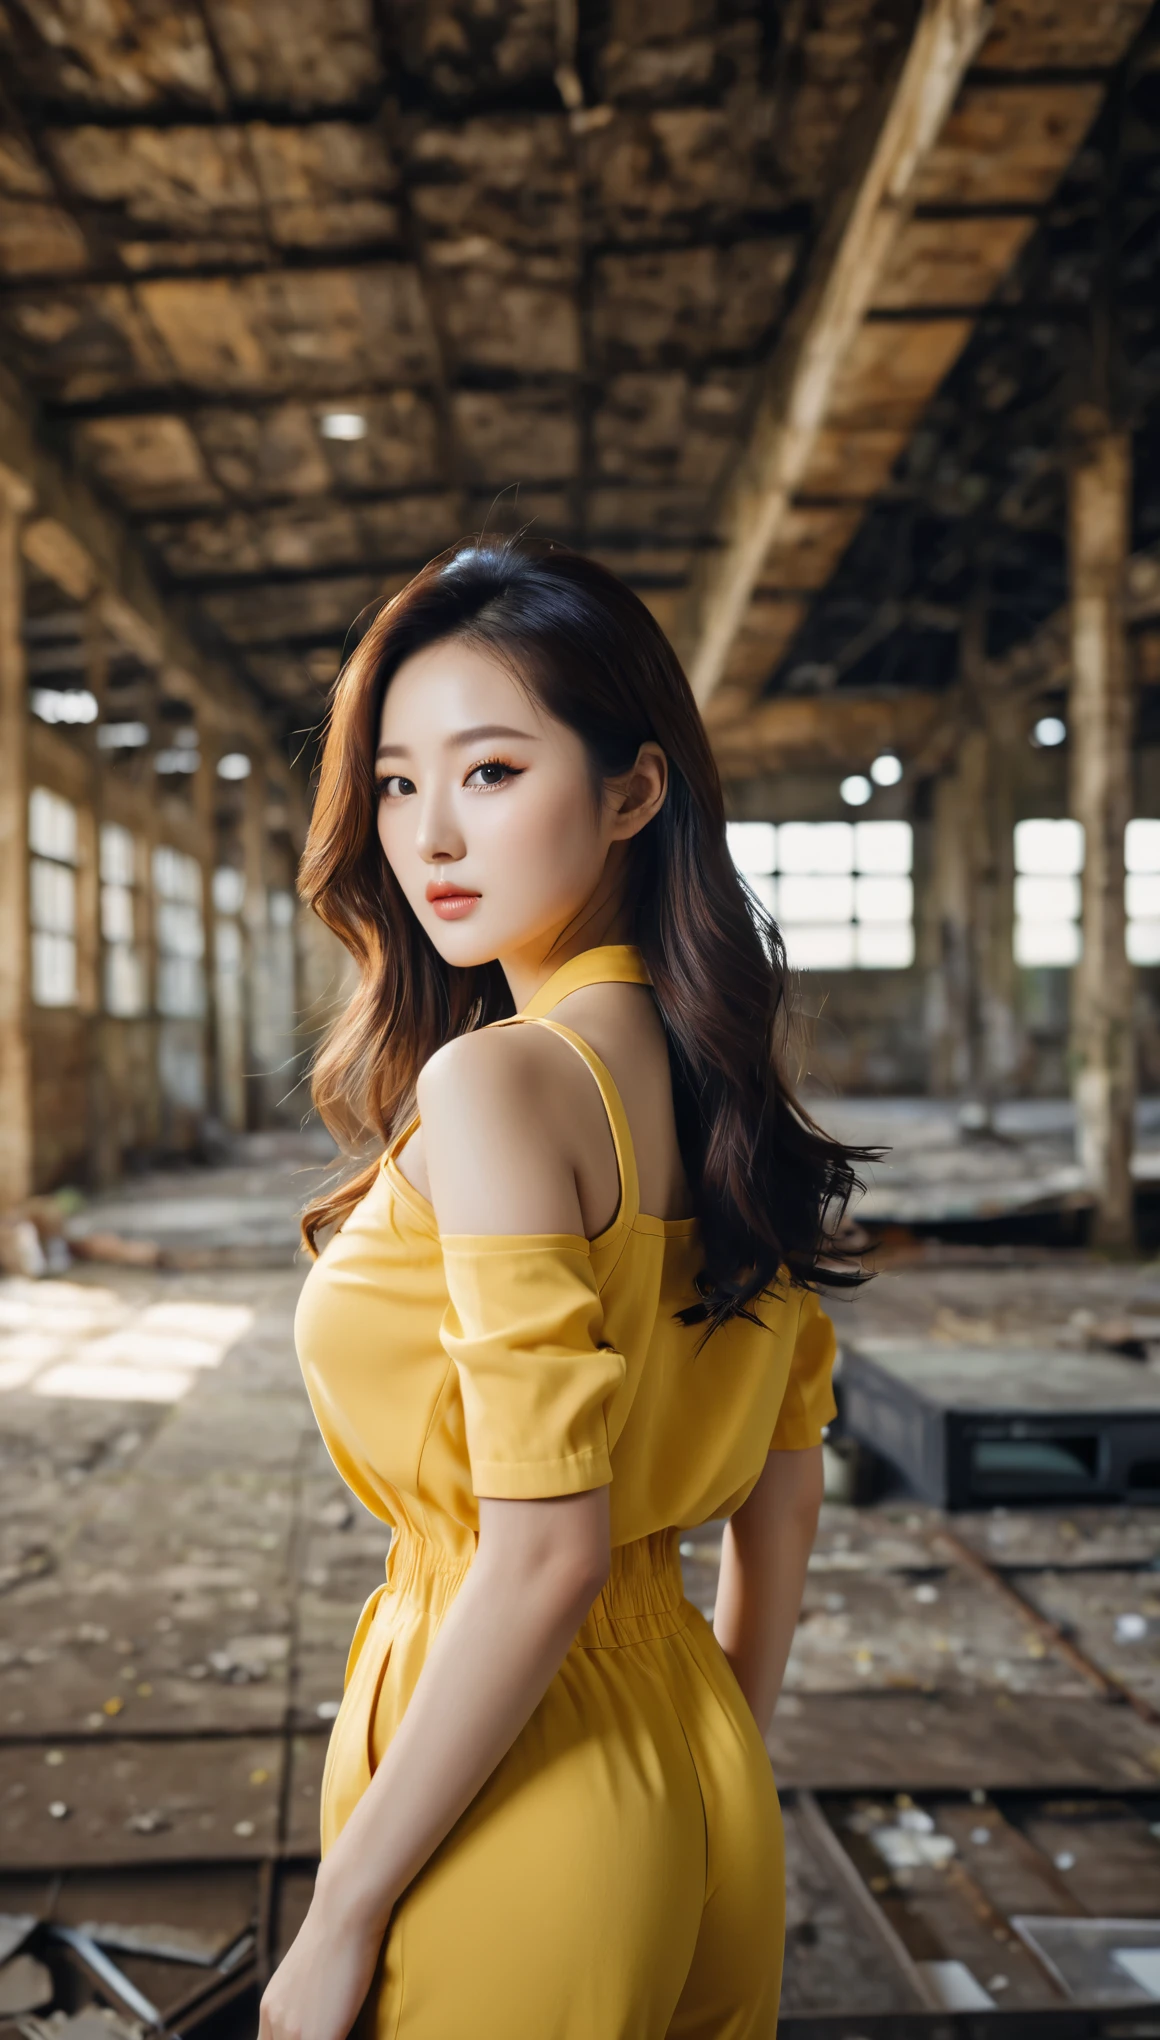 Nahaufnahme einer schönen koreanischen Frau, 34 Zoll Brustgröße, trägt einen gelben Overall mit schwarzer Borte, in verlassenen Lagerhallen, Bokeh-Hintergrund, Polaroid-Foto, UHD